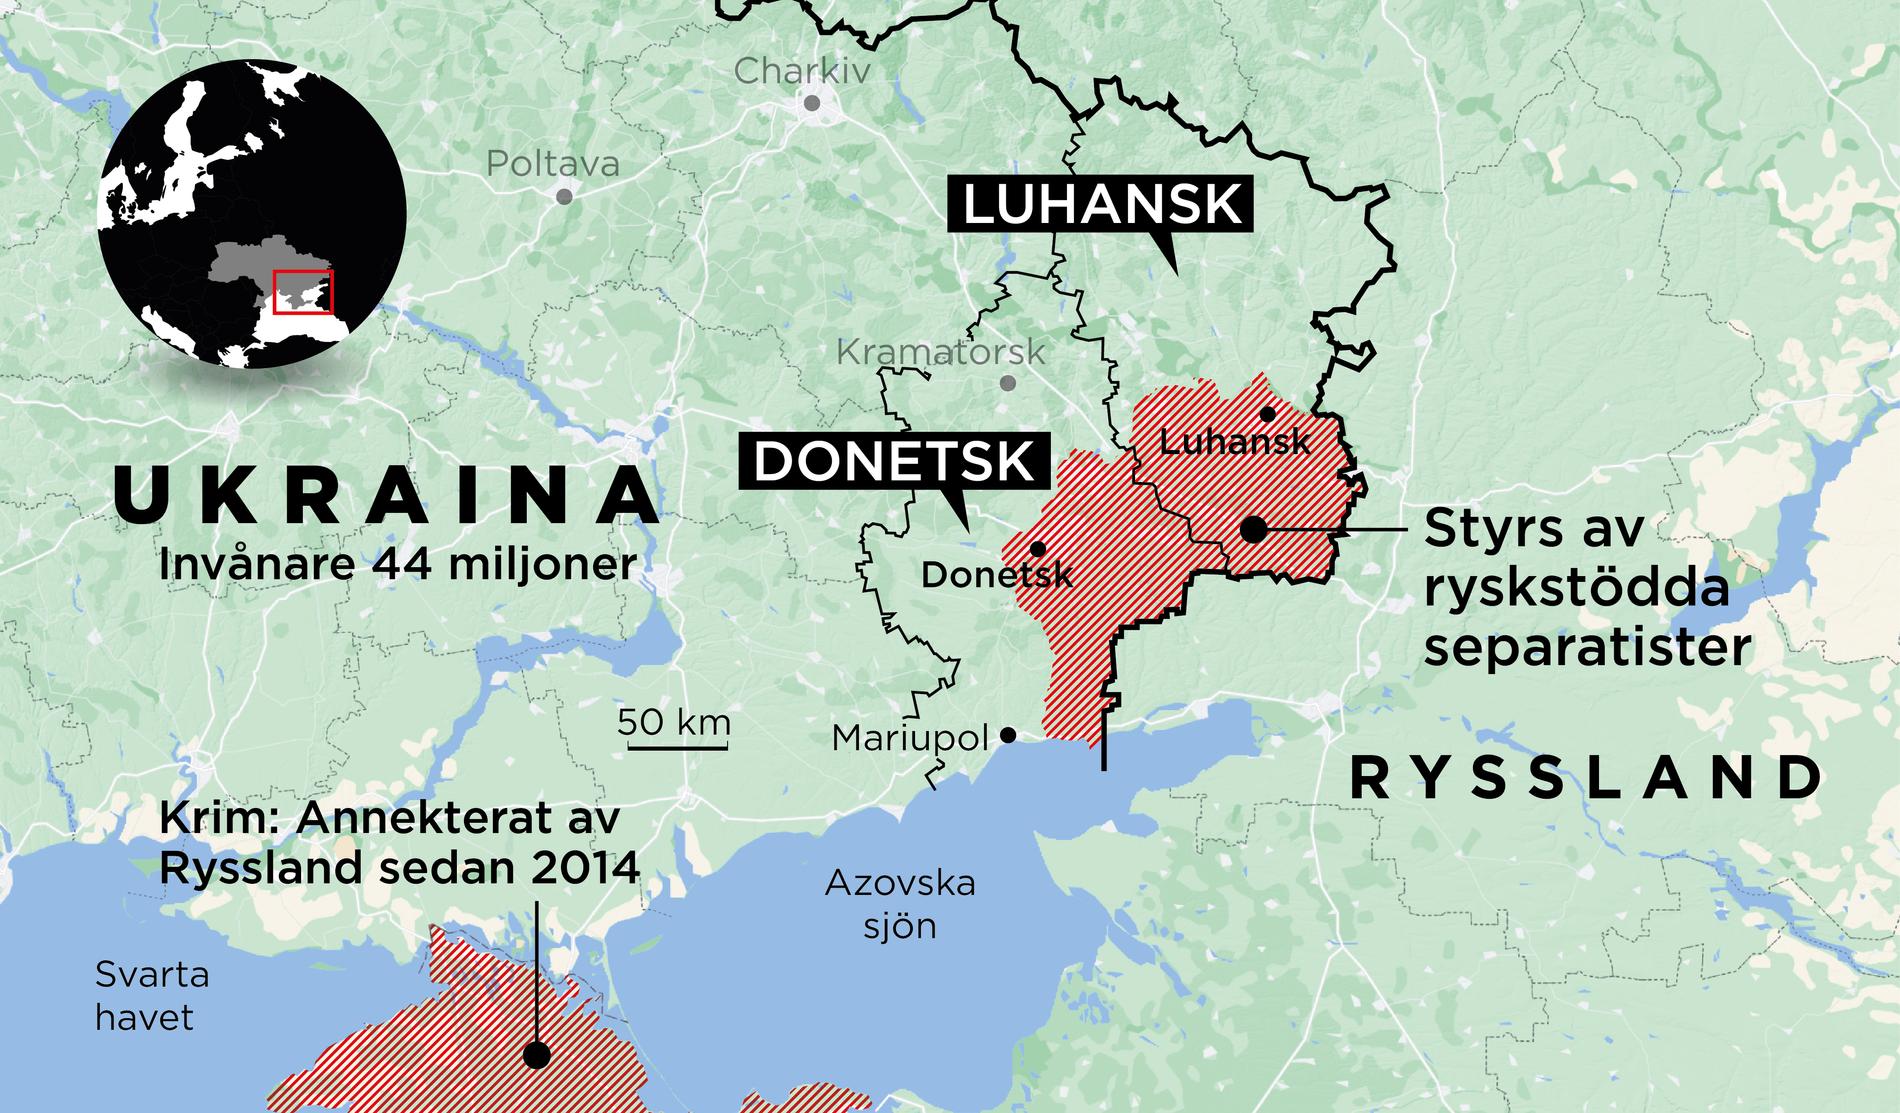 Rebellregionerna Donetsk och Luhansk styrs delvis av separatister. De vill inte tillhöra Ukraina. 